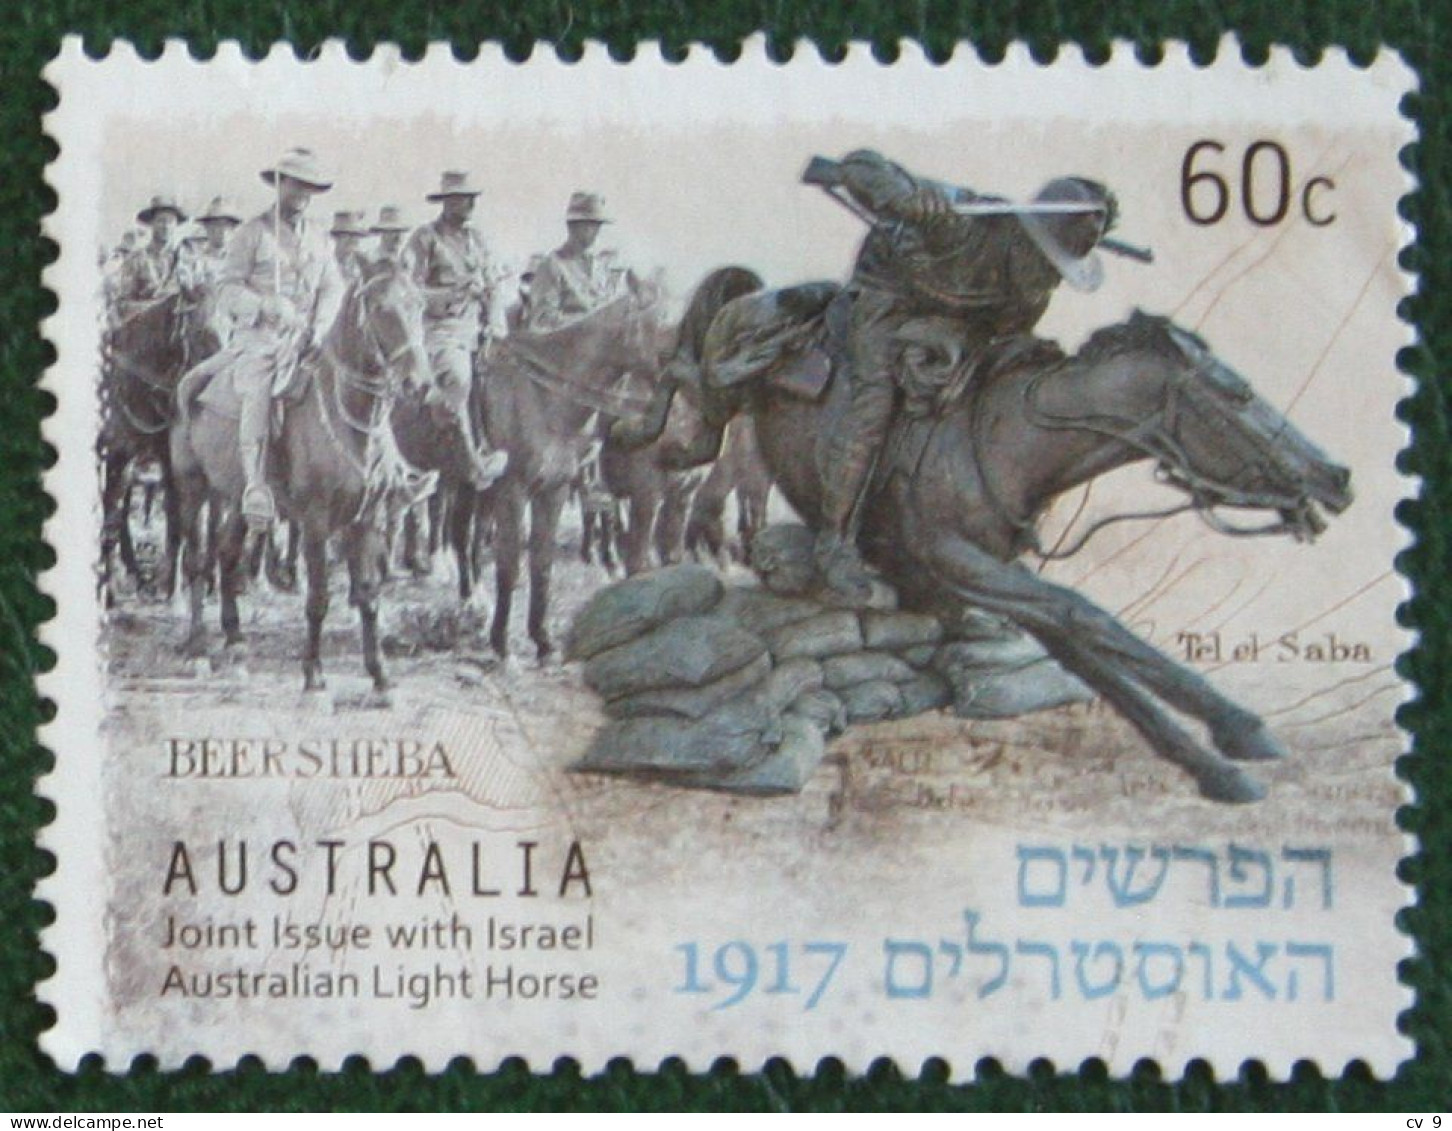 Joint Issue With Israel - Battle Of Beersheba 2013 Mi 3944 Y&T - Used Gebruikt Oblitere Australia Australien Australie - Used Stamps